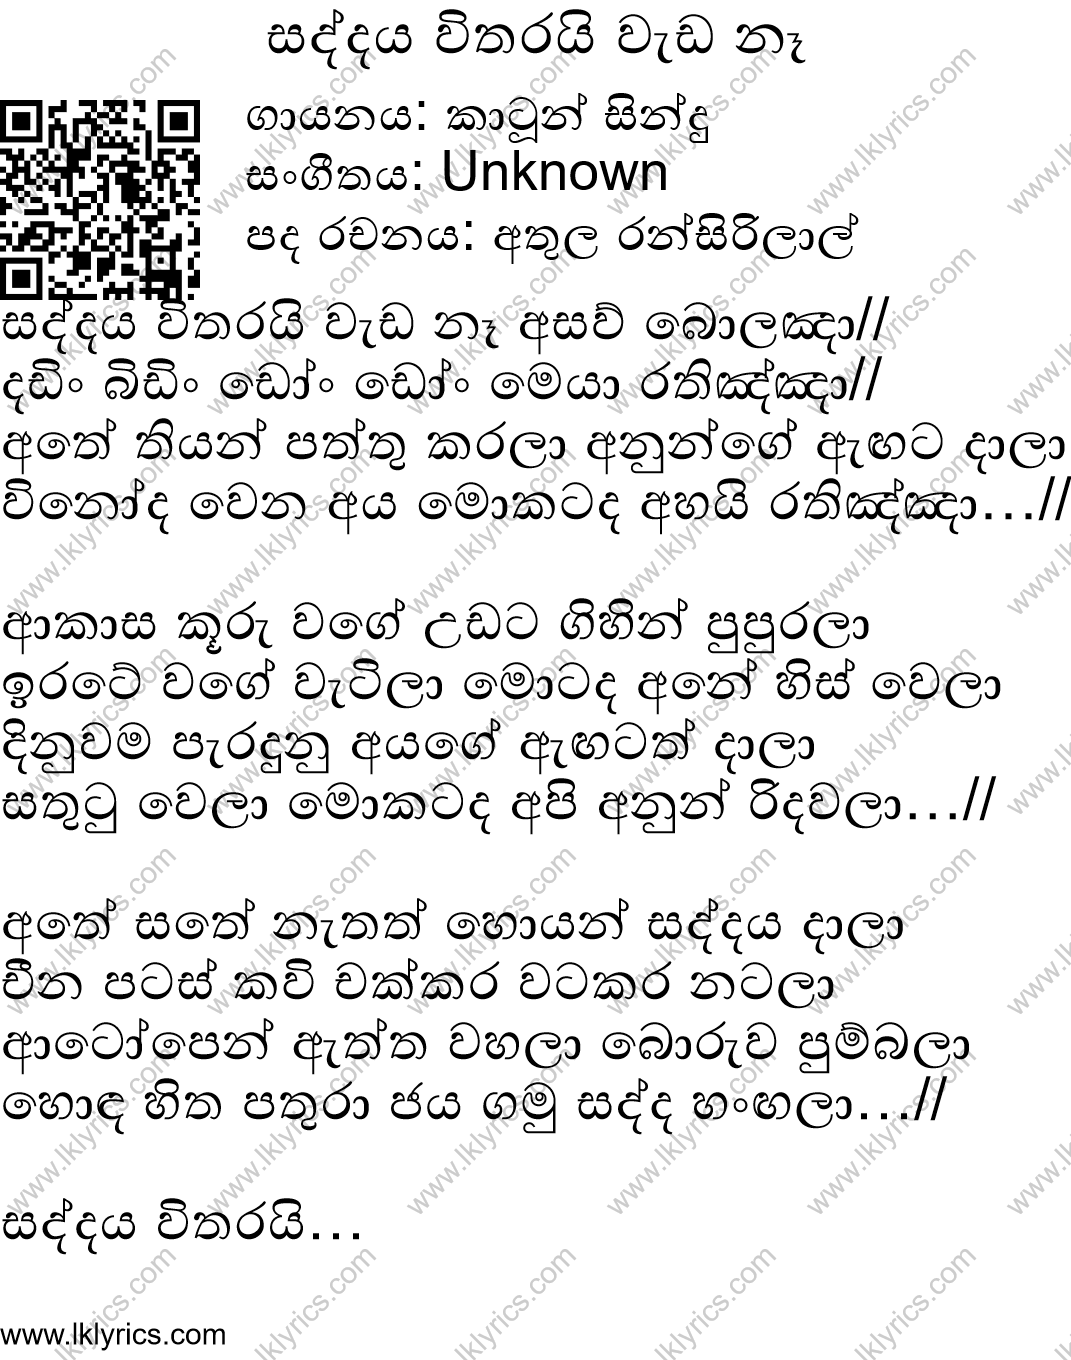 Saddaya Vitharai Wada Na Lyrics - LK Lyrics